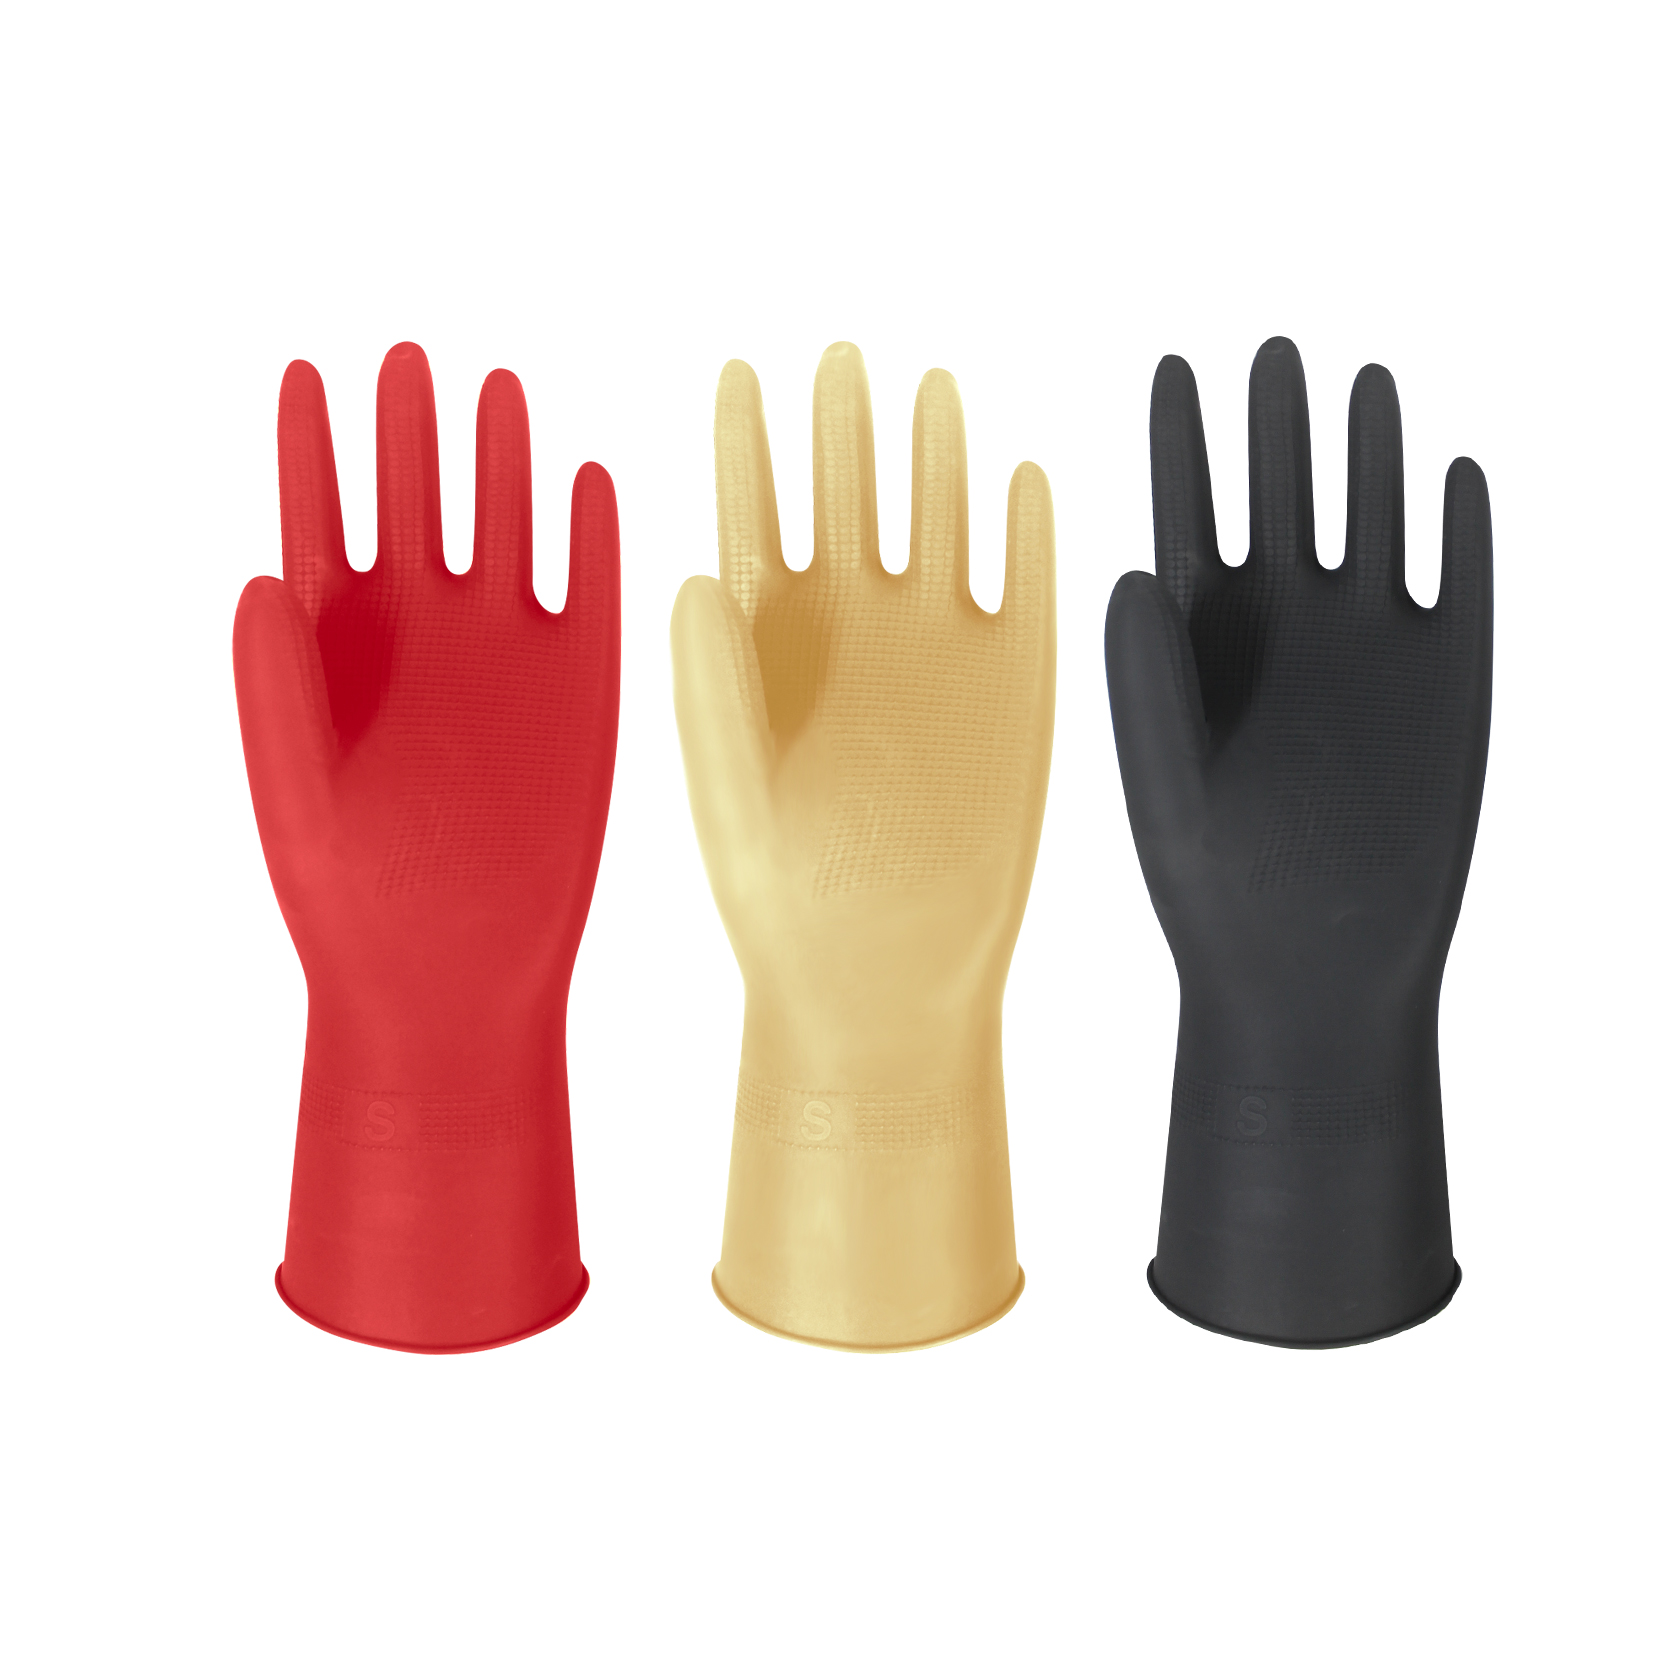 Latex Household Rolled Cuff Gloves maikling guwantes na goma para sa Paglilinis ng mga guwantes na panghugas ng pinggan